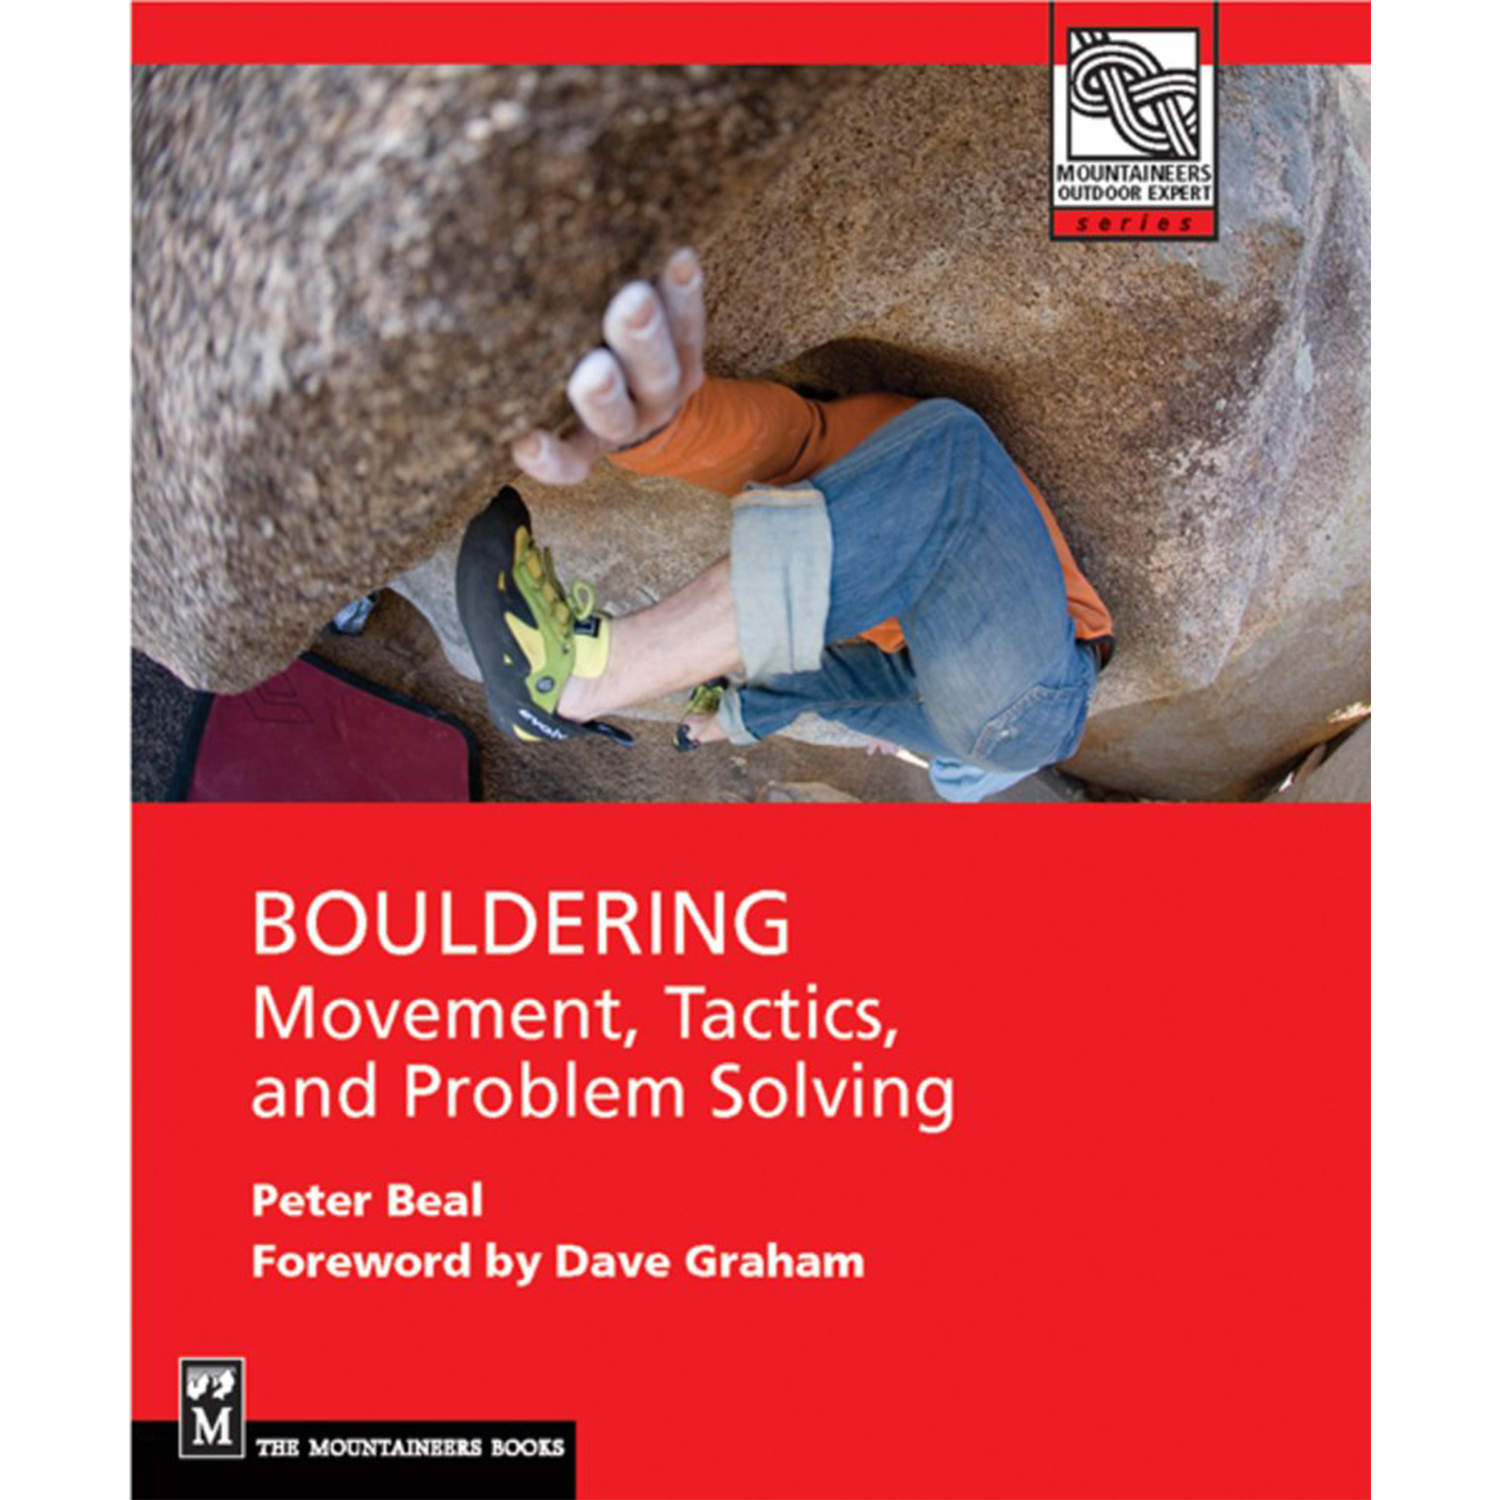 Bouldering : Movement, Tactics, and Problem Solving